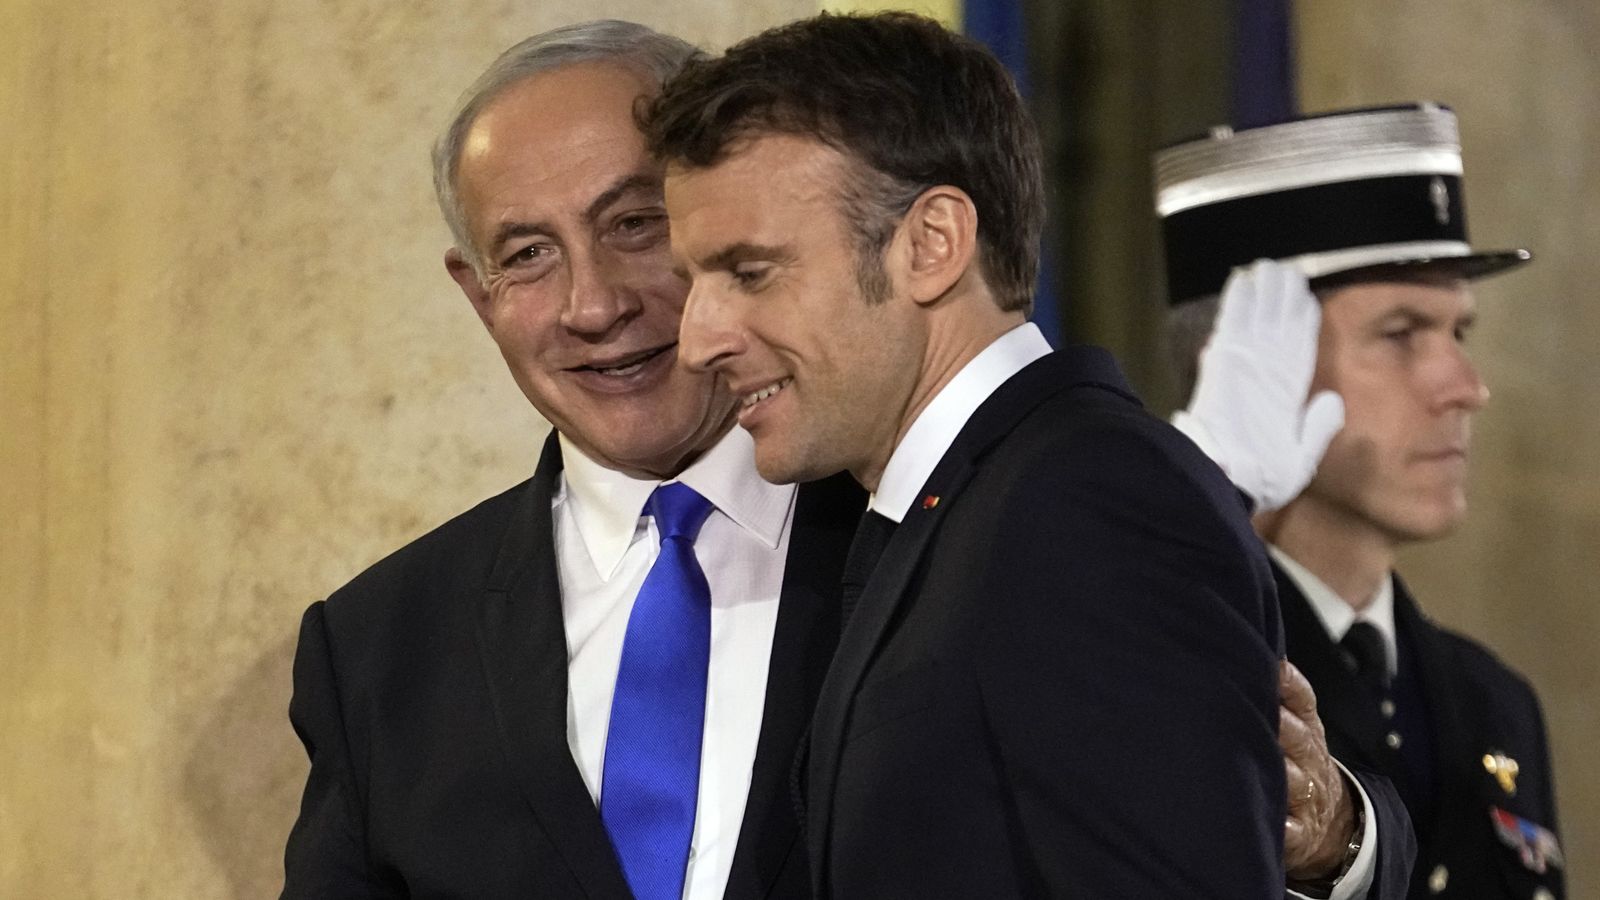 Macron reçoit Netanyahu à Paris pour planifier des livraisons d’armes israéliennes à l’Ukraine